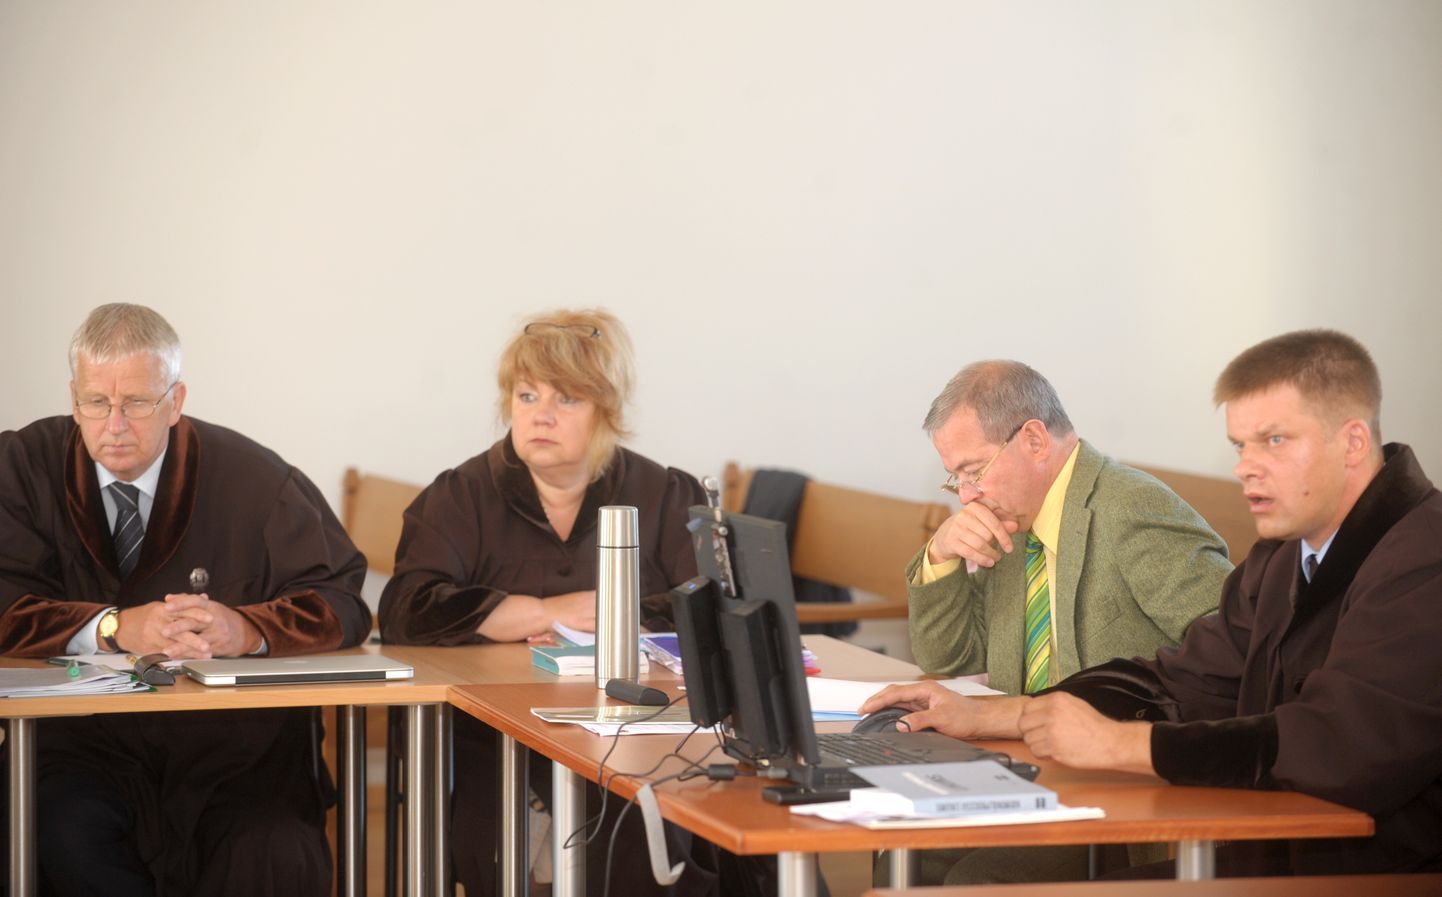 Advokāti Māris Mezītis (no kreisās), Irina Kauke, Ventspils mērs Aivars Lembergs un advokāts Raimonds Krastiņš pirms tiesas sēdes Rīgas apgabaltiesā, kur turpinās izskatīt Ventspils mēra krimināllietu.